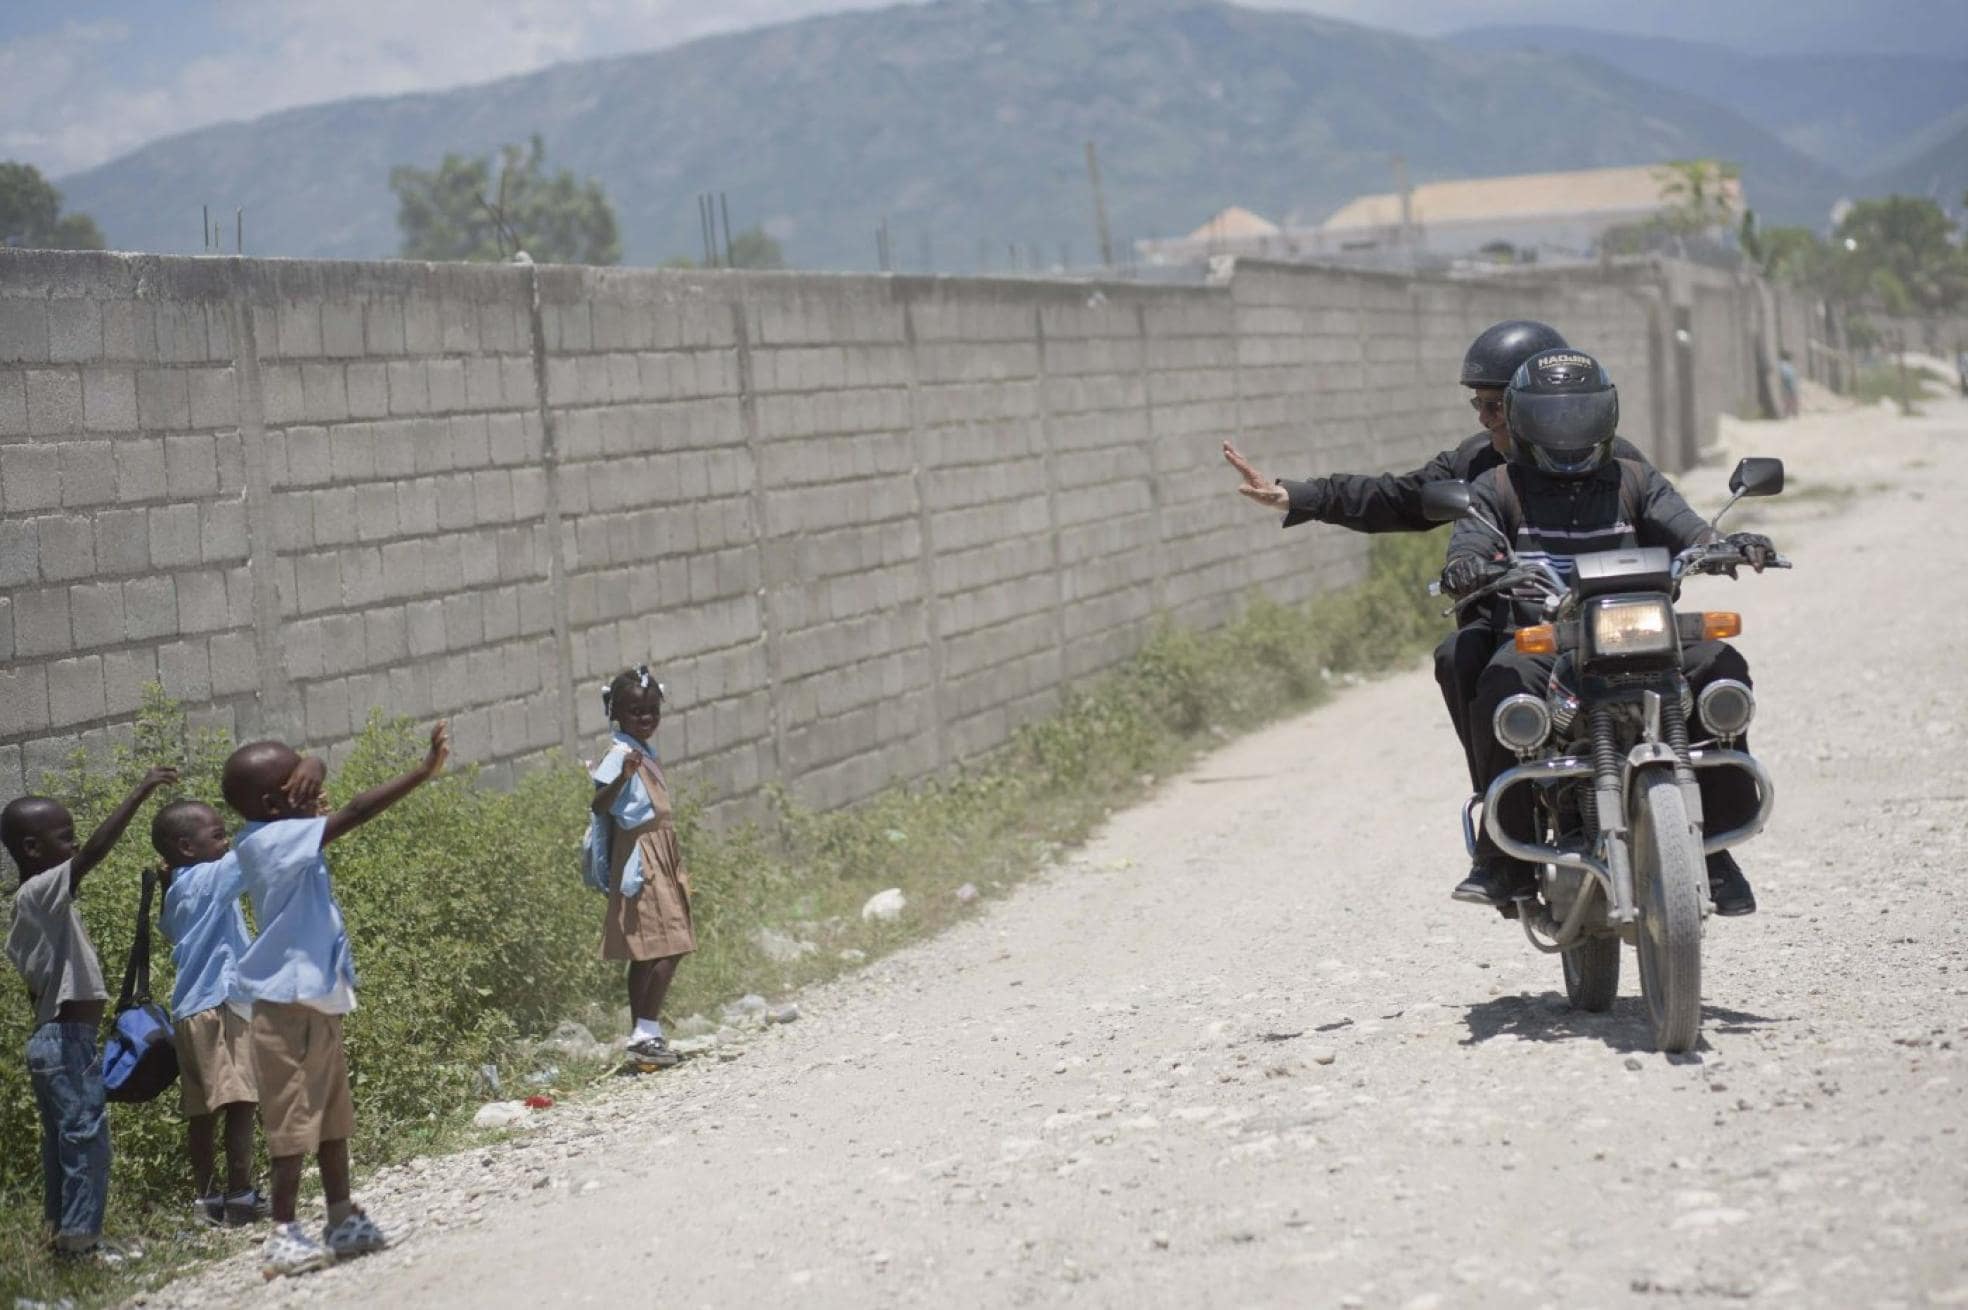 El sacerdote, en el año 2010, saluda desde una moto a un grupo de niños, en Haití.